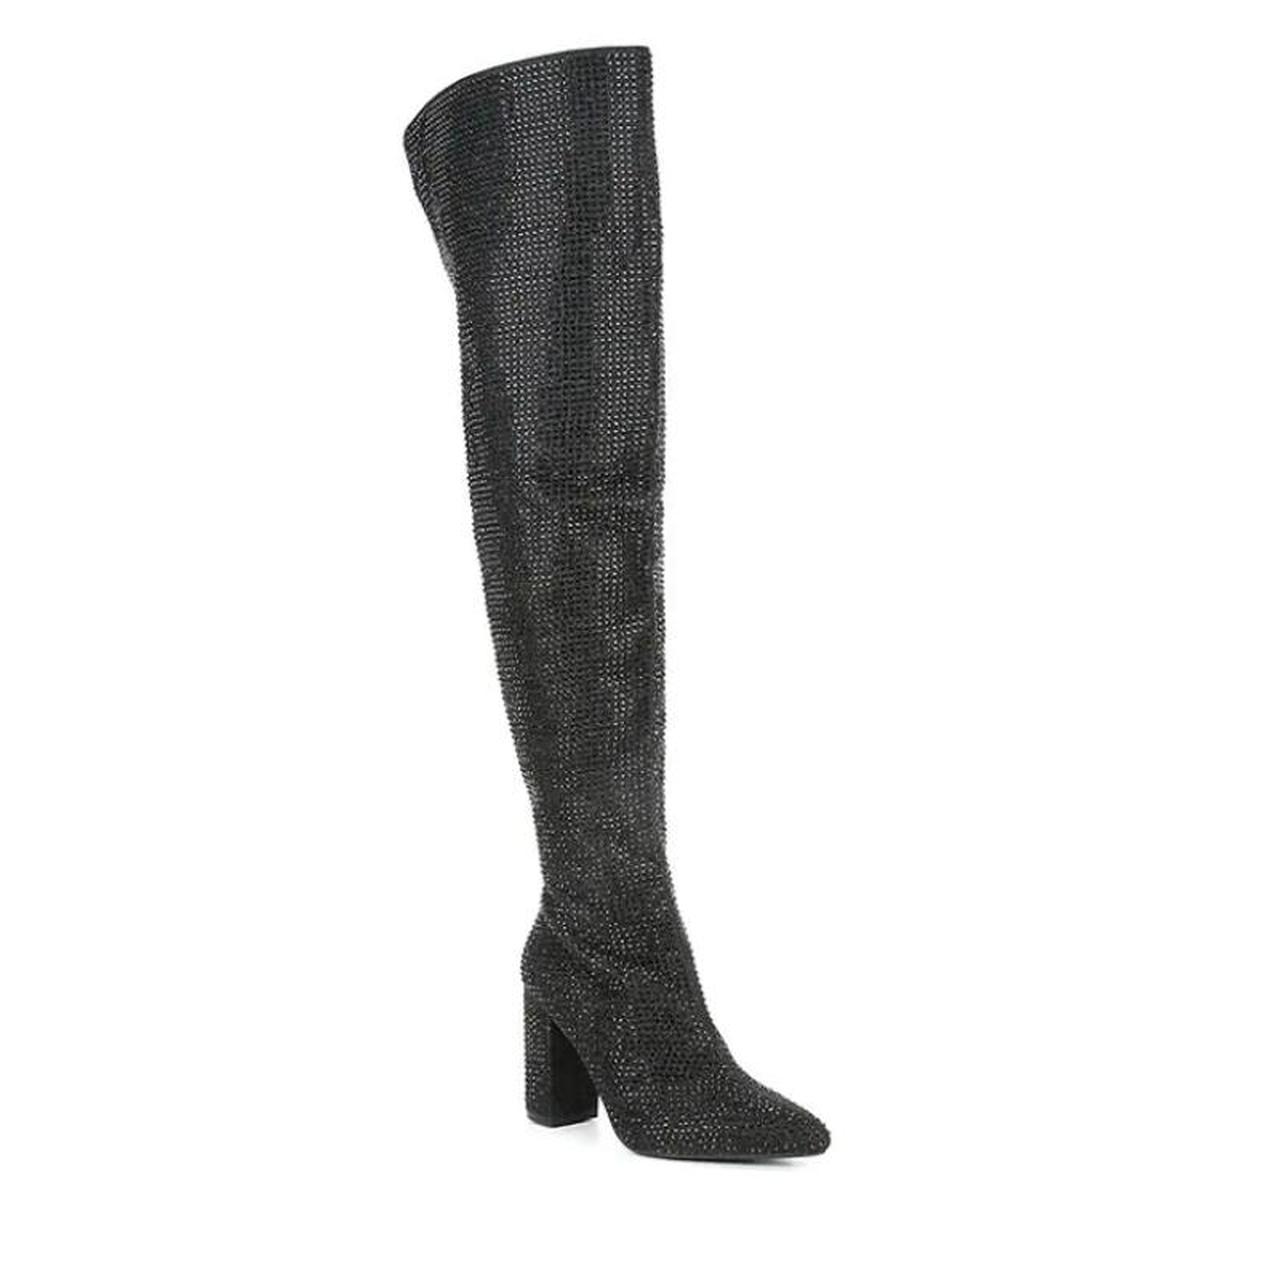 Carvela Shine Embellished Over-the-Knee Boots Black... - Depop